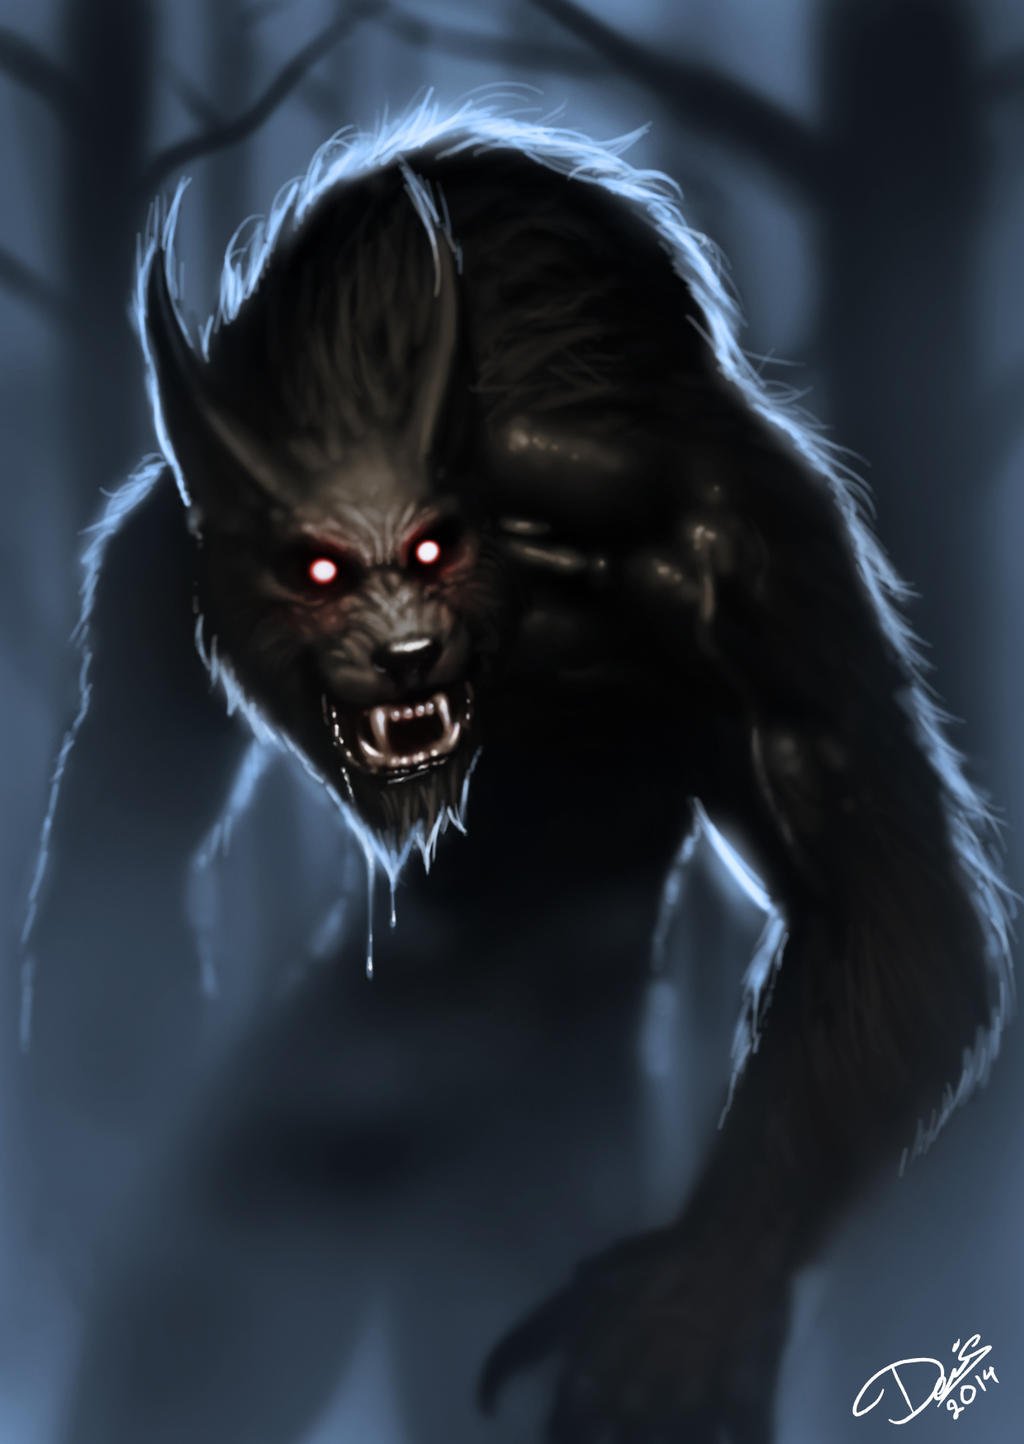 Werewolf by Disse86 on DeviantArt